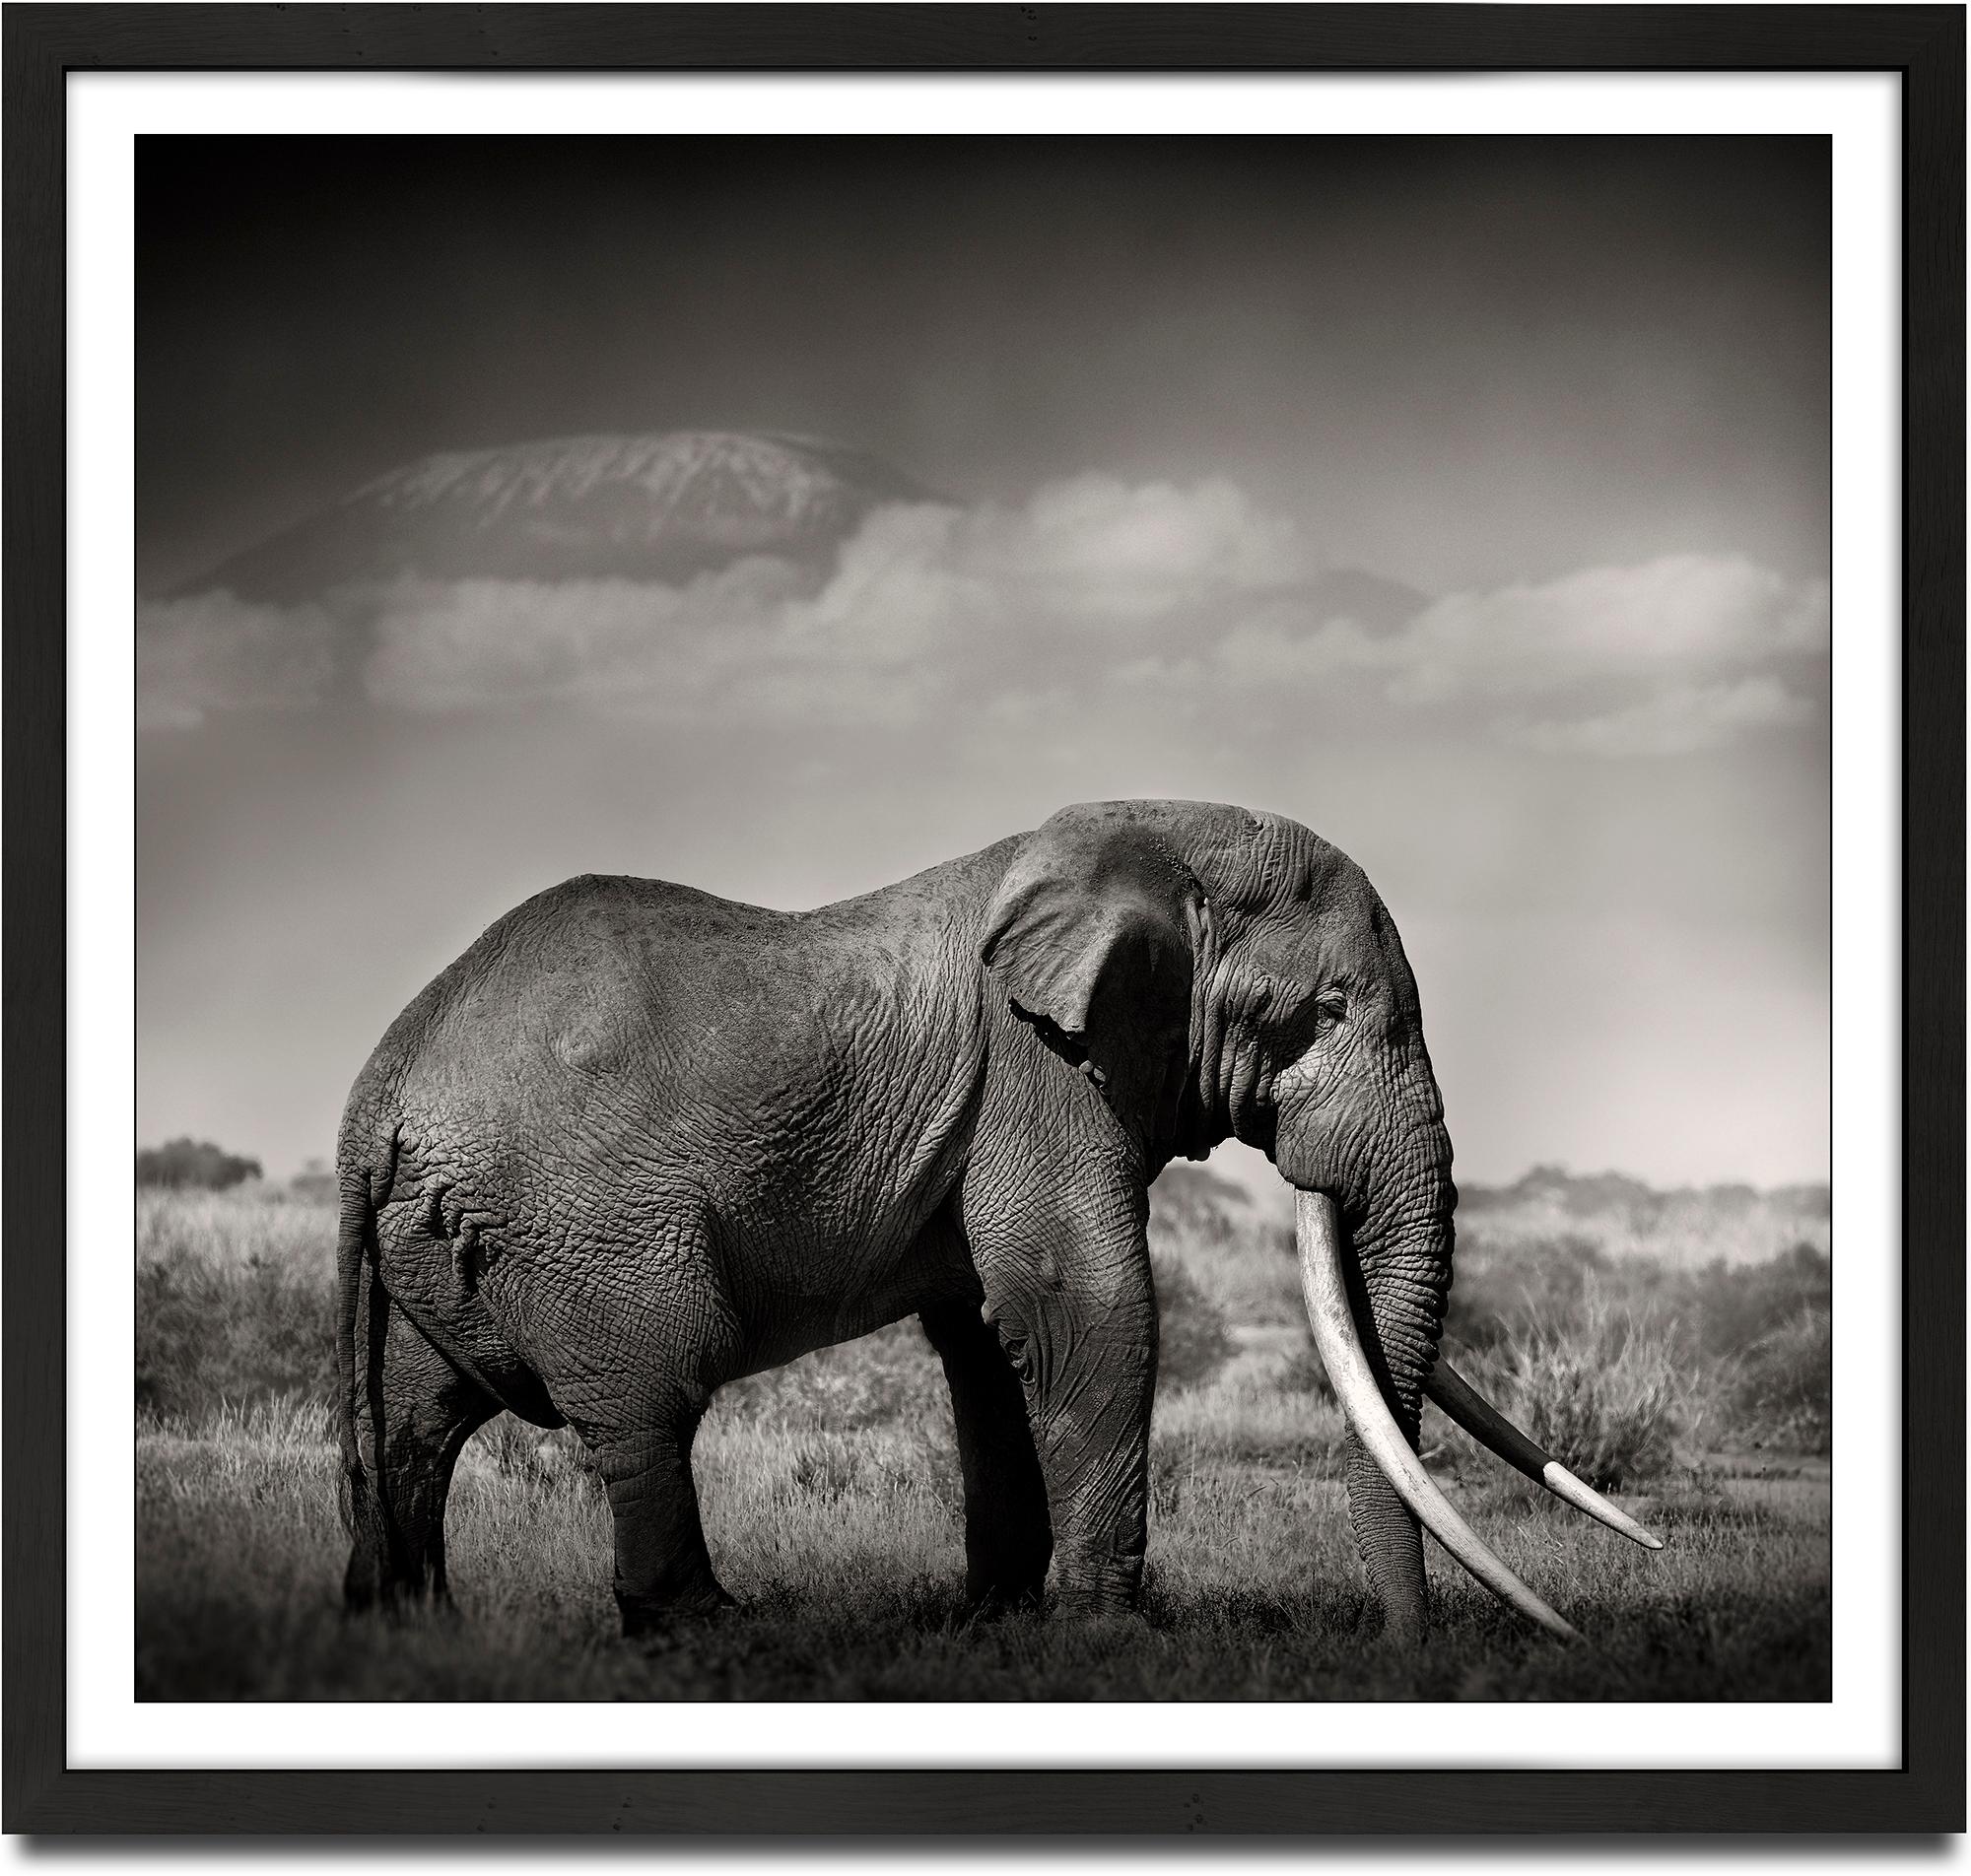 Joachim Schmeisser Landscape Photograph – Tim's Land, eine Hommage an die Ikonen Afrikas, Elefanten, Wildtiere, Schwarz-Weiß